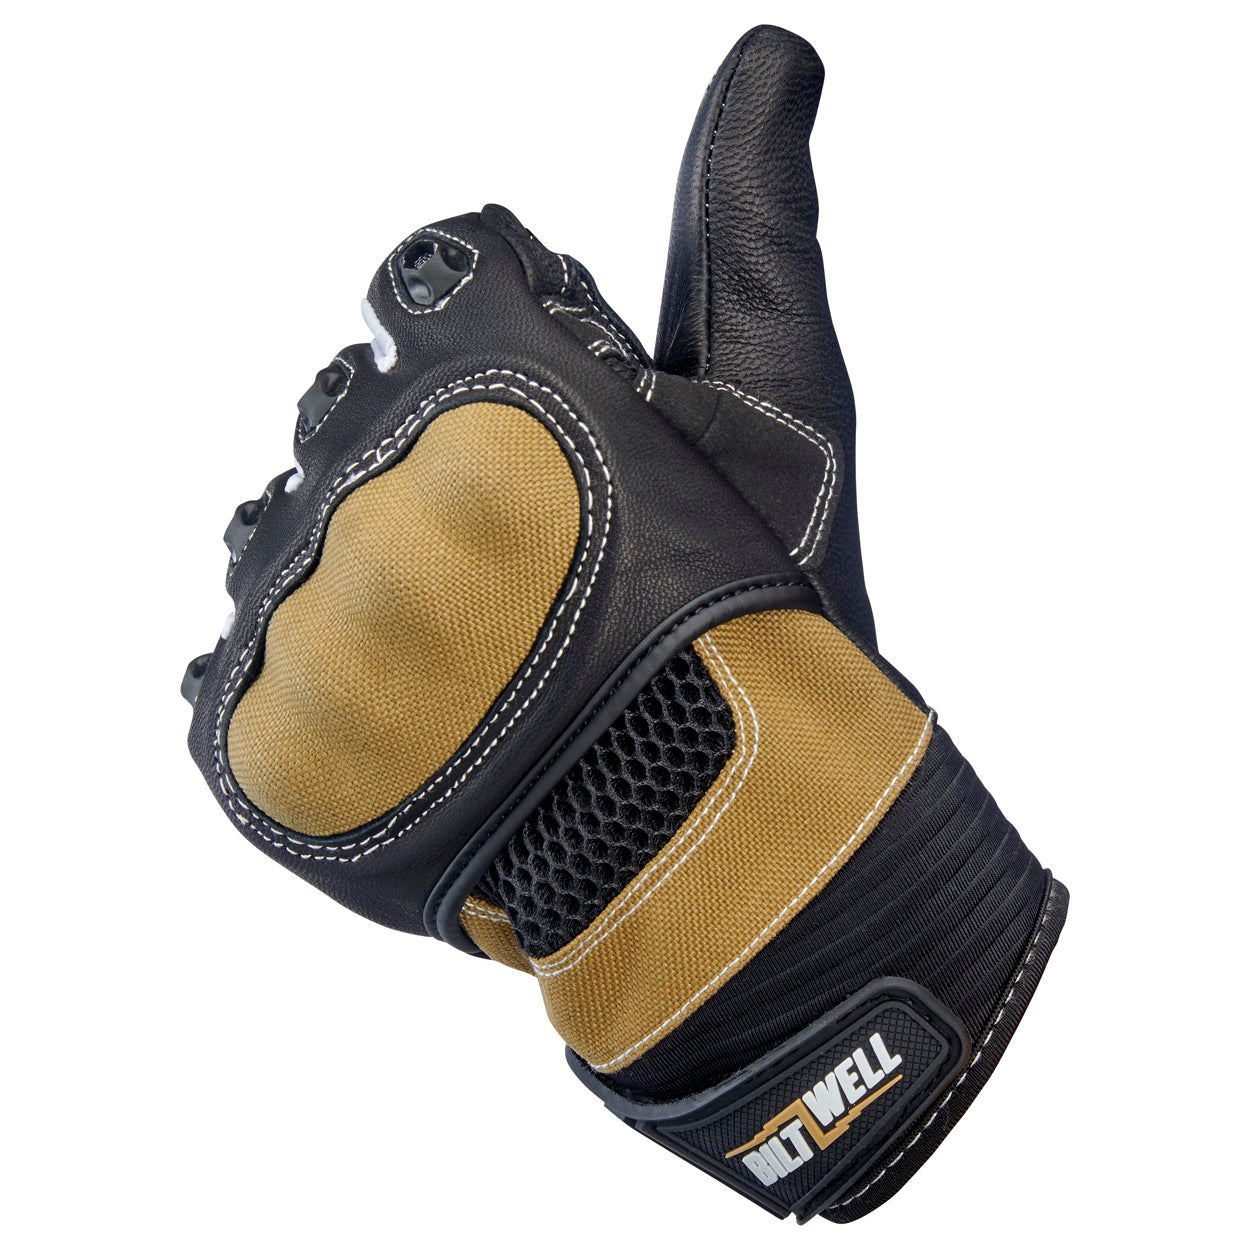 Bridgeport Gloves - Tan